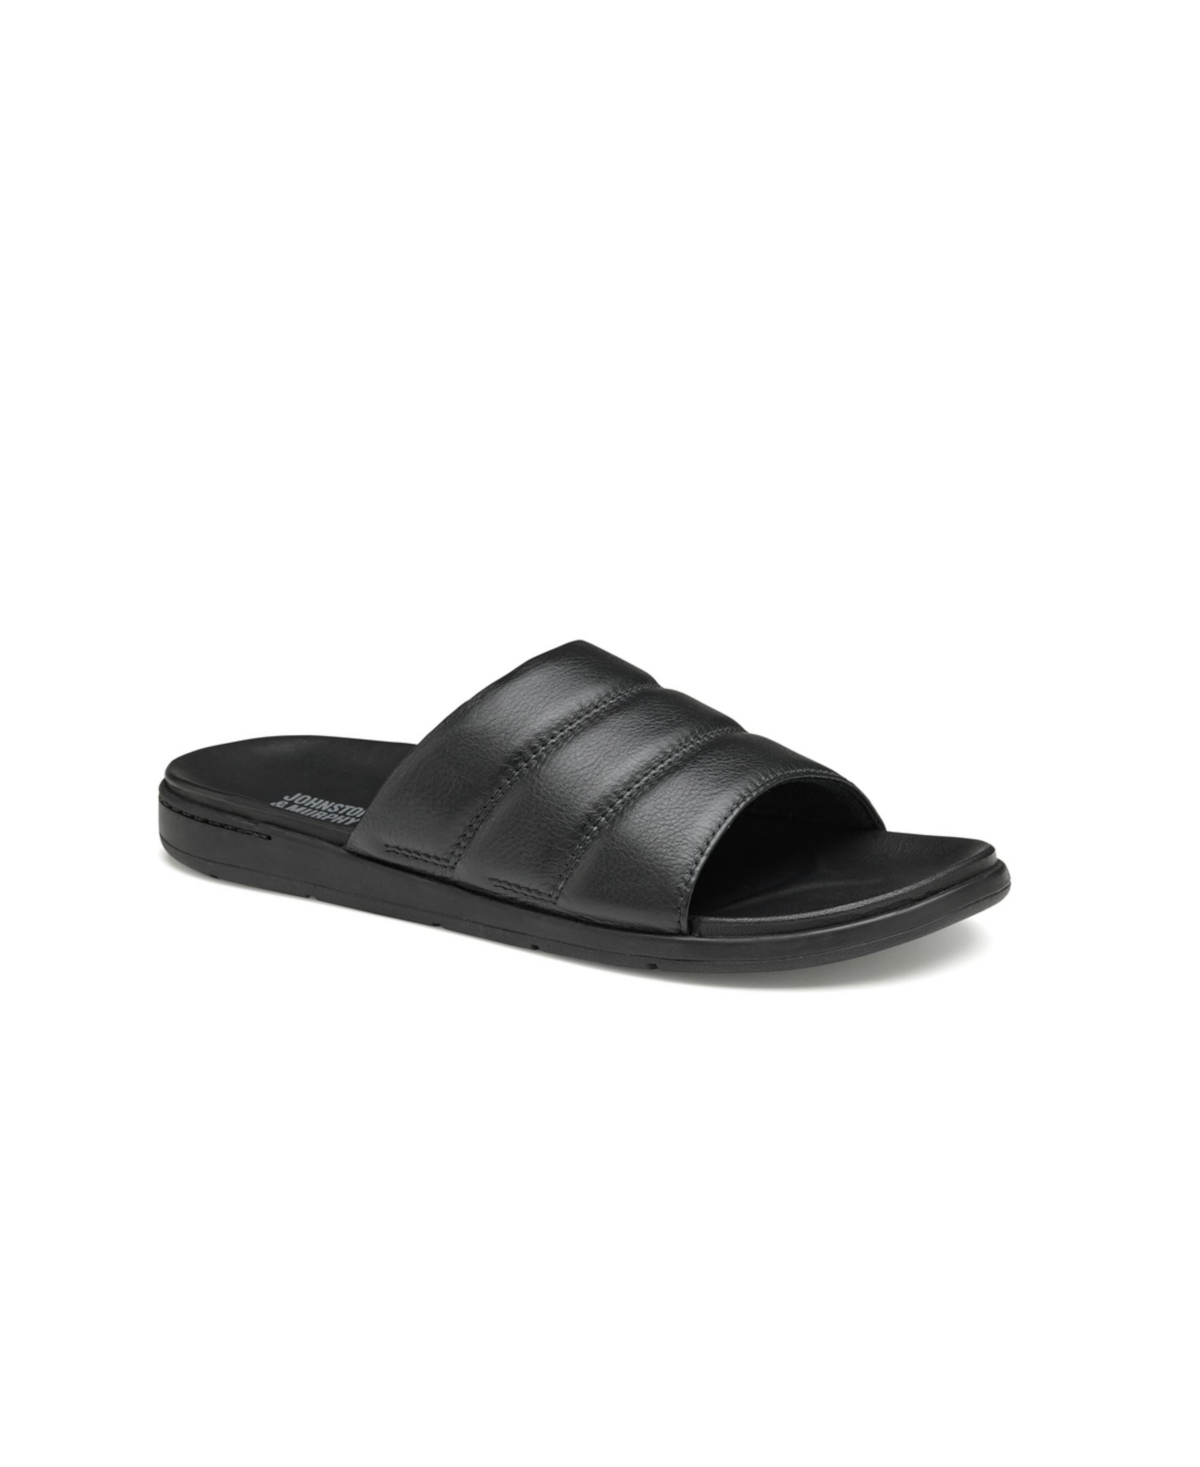 Men's Branson Slide Sandals - Black